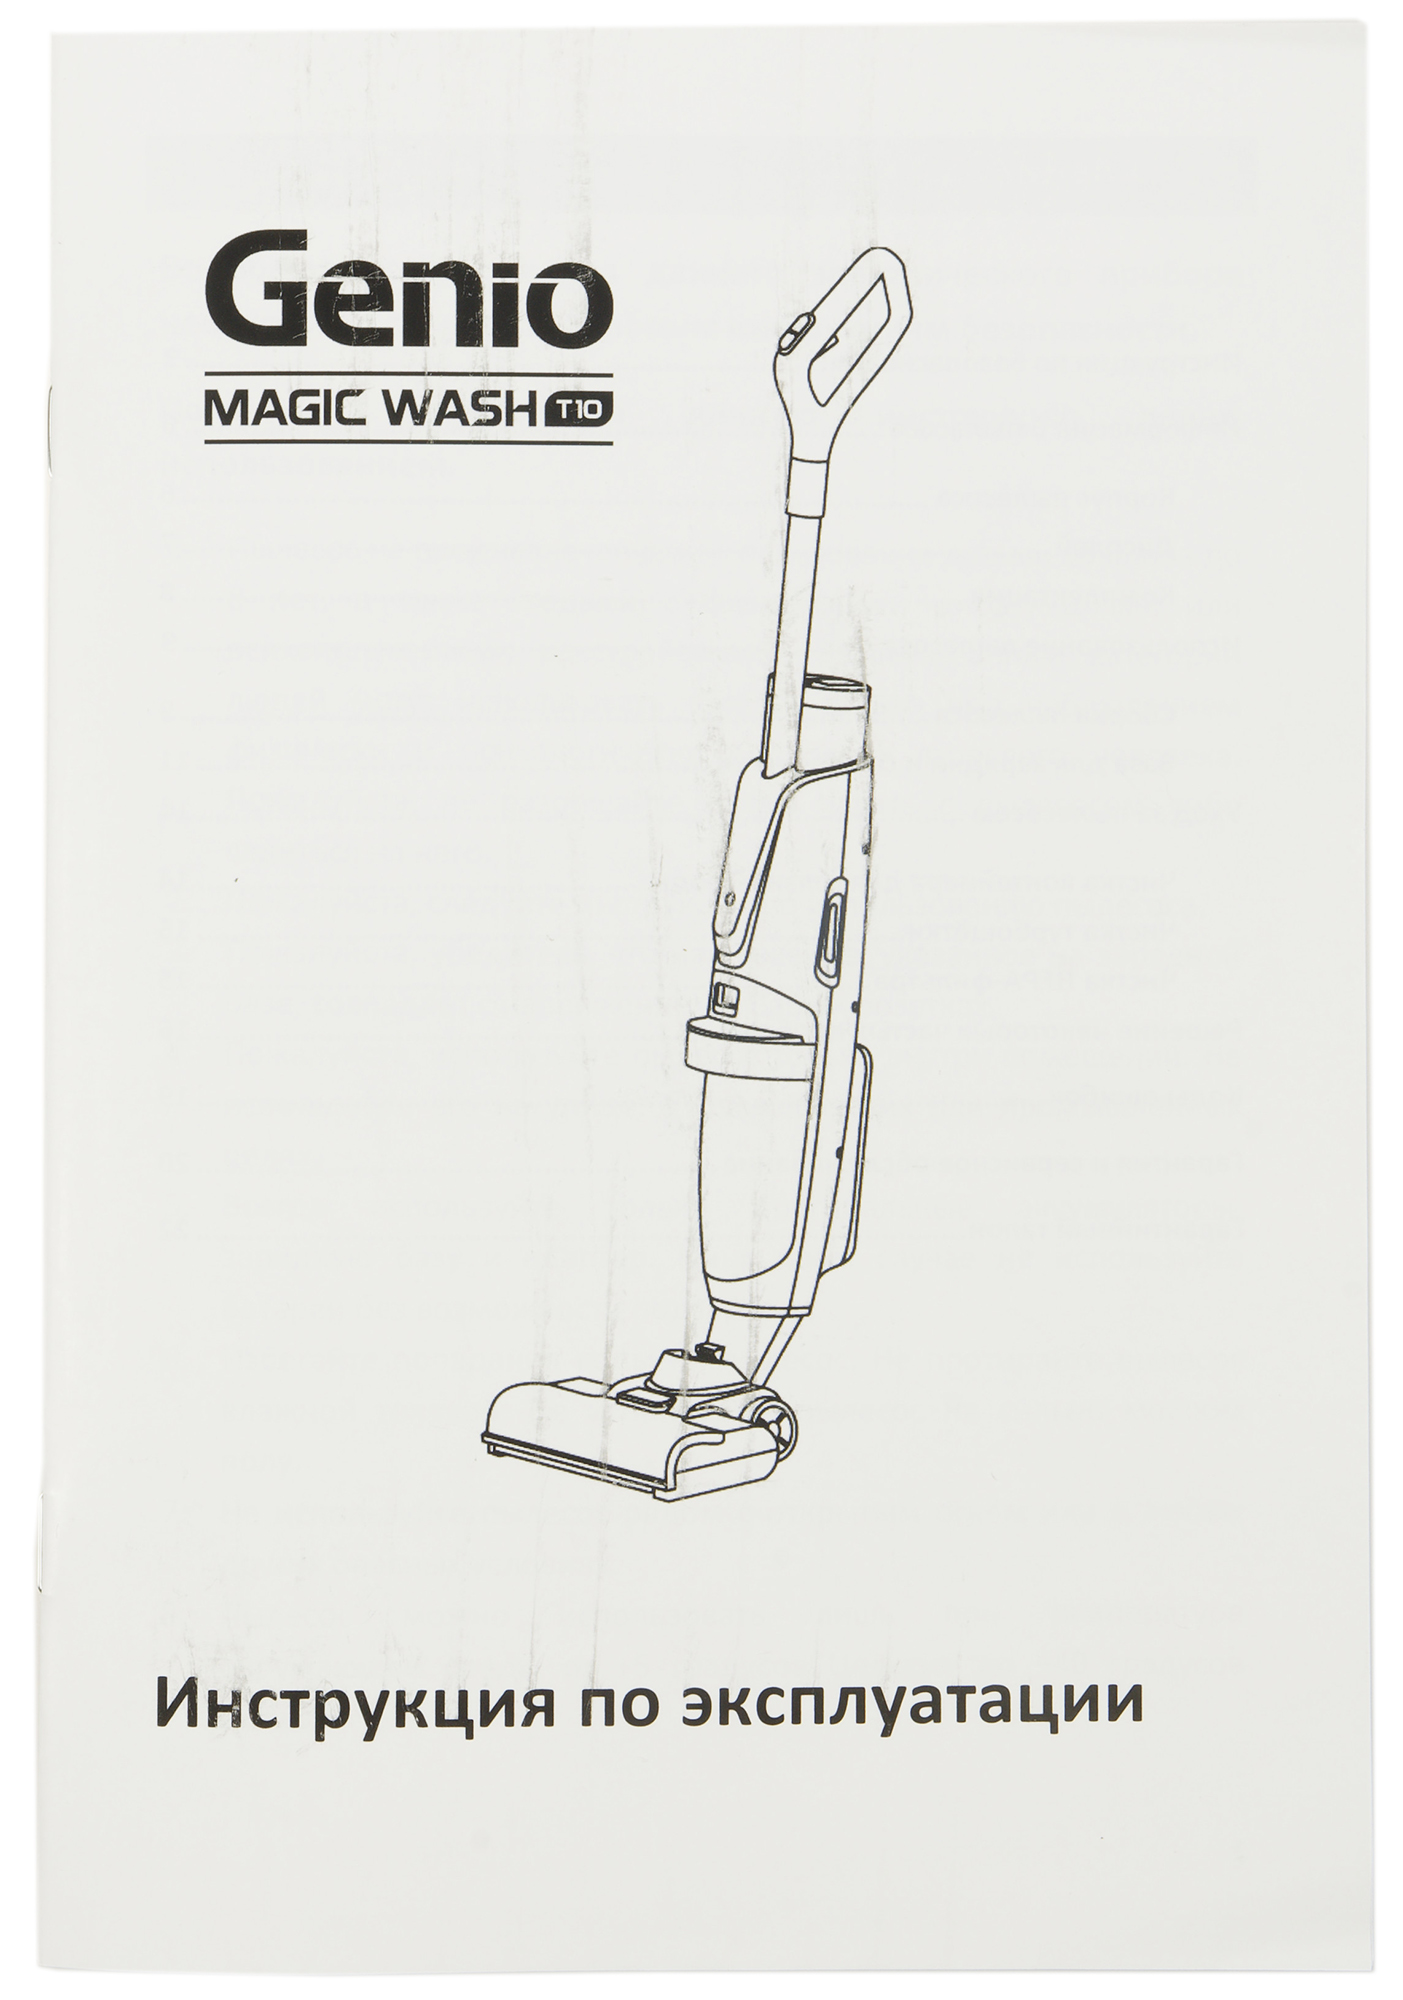 Genio magic. Genio Magic Wash t10. Пылесос гарени аккумуляторный схема. Genio пылесос инструкция. Genio пылесос беспроводной.